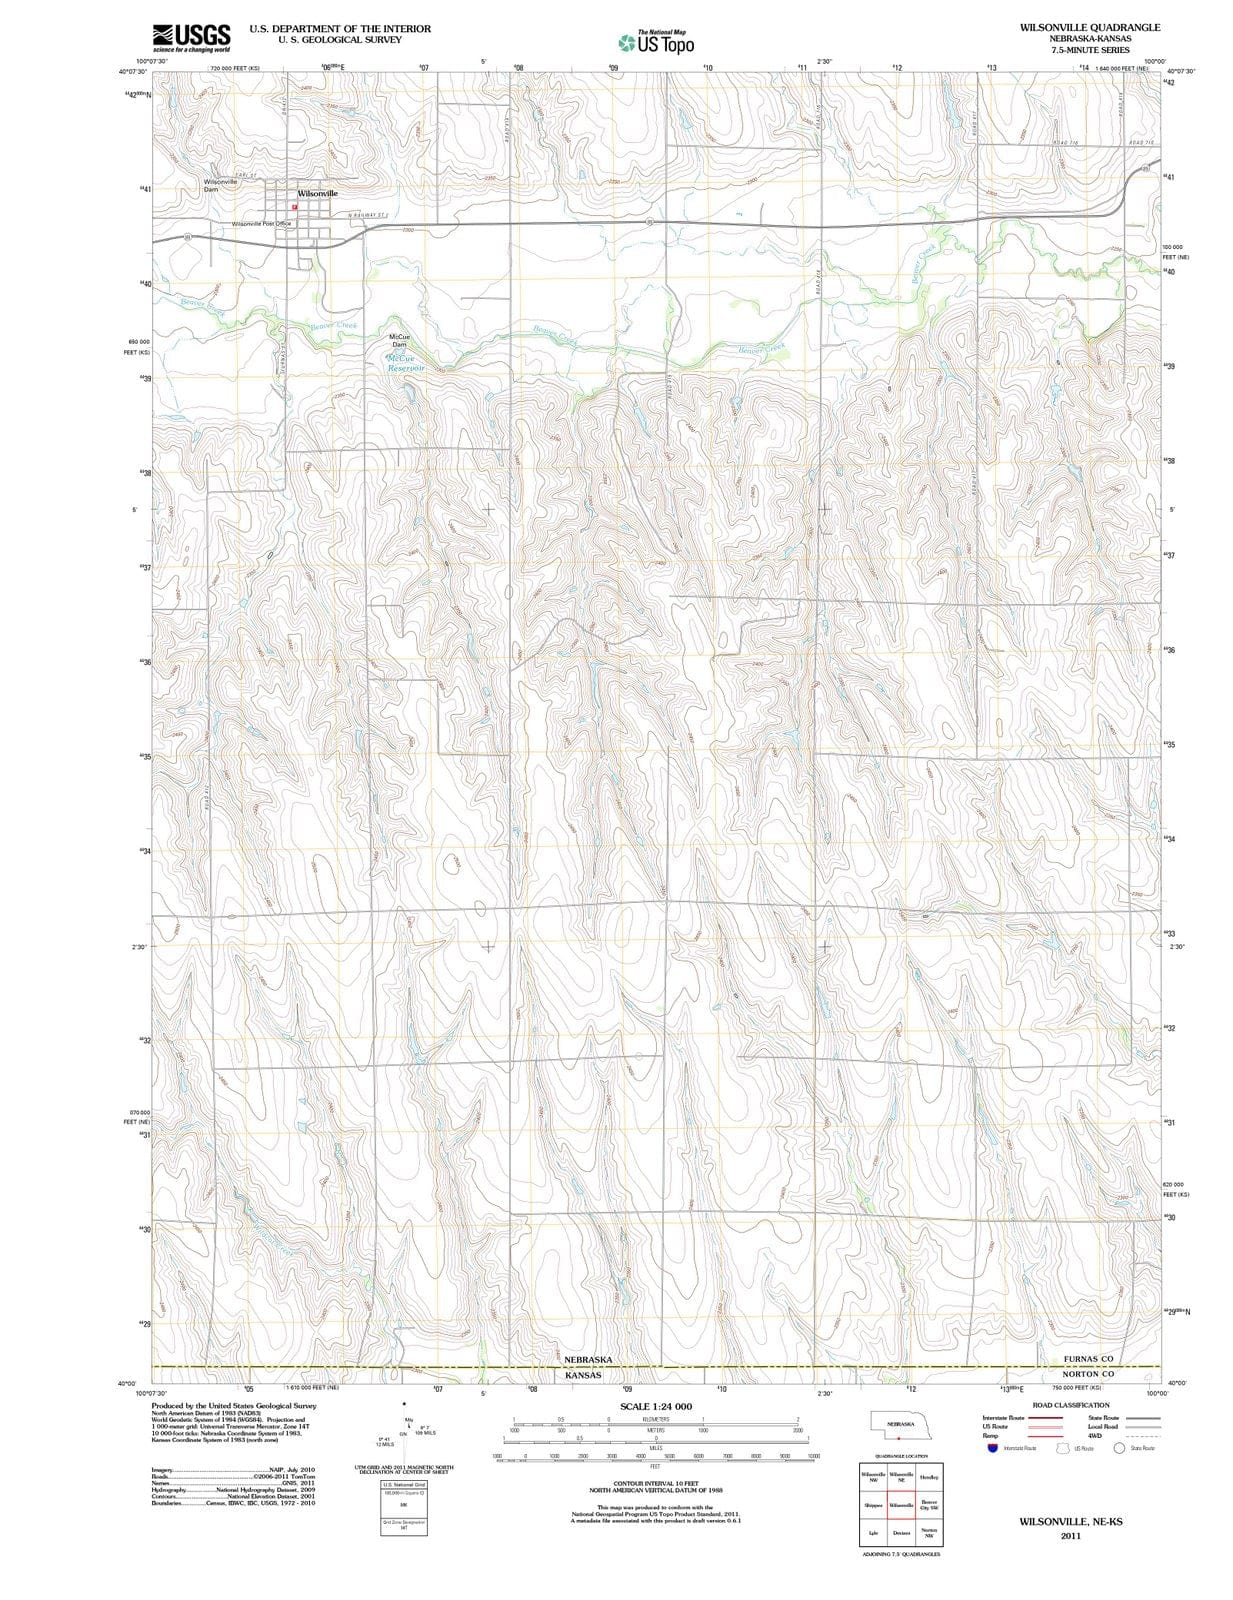 2011 Wilsonville, NE - Nebraska - USGS Topographic Map